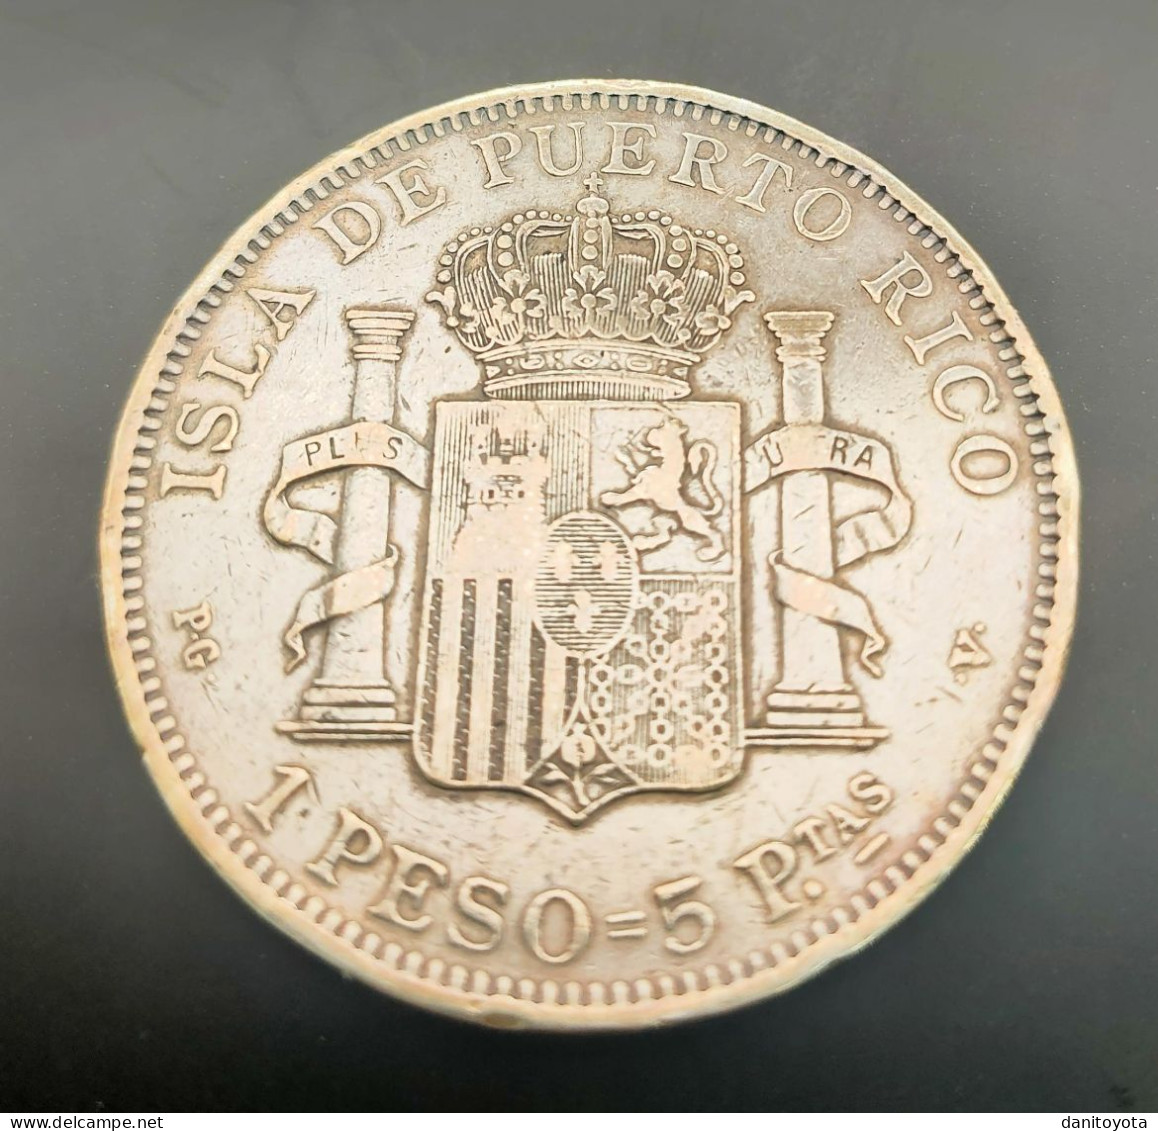 ESPAÑA. AÑO 1895. ALFONSO XIII. 1 PESO PLATA PUERTO RICO. PESO 24,7 GR - Provincial Currencies